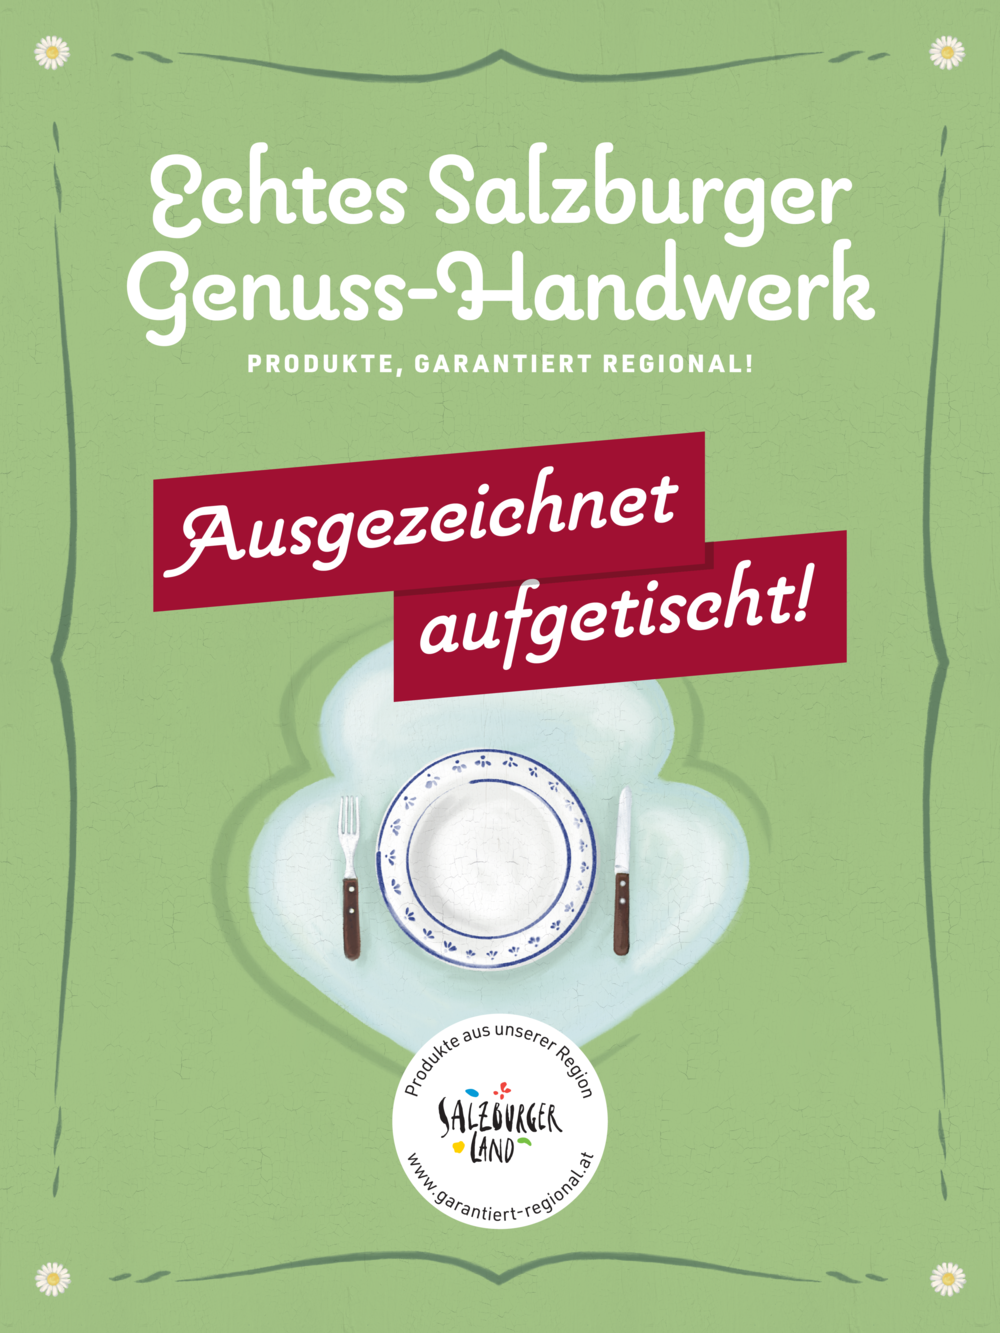 Oberndorfer Catering Betriebs-GmbH bei Salzburg schmeckt